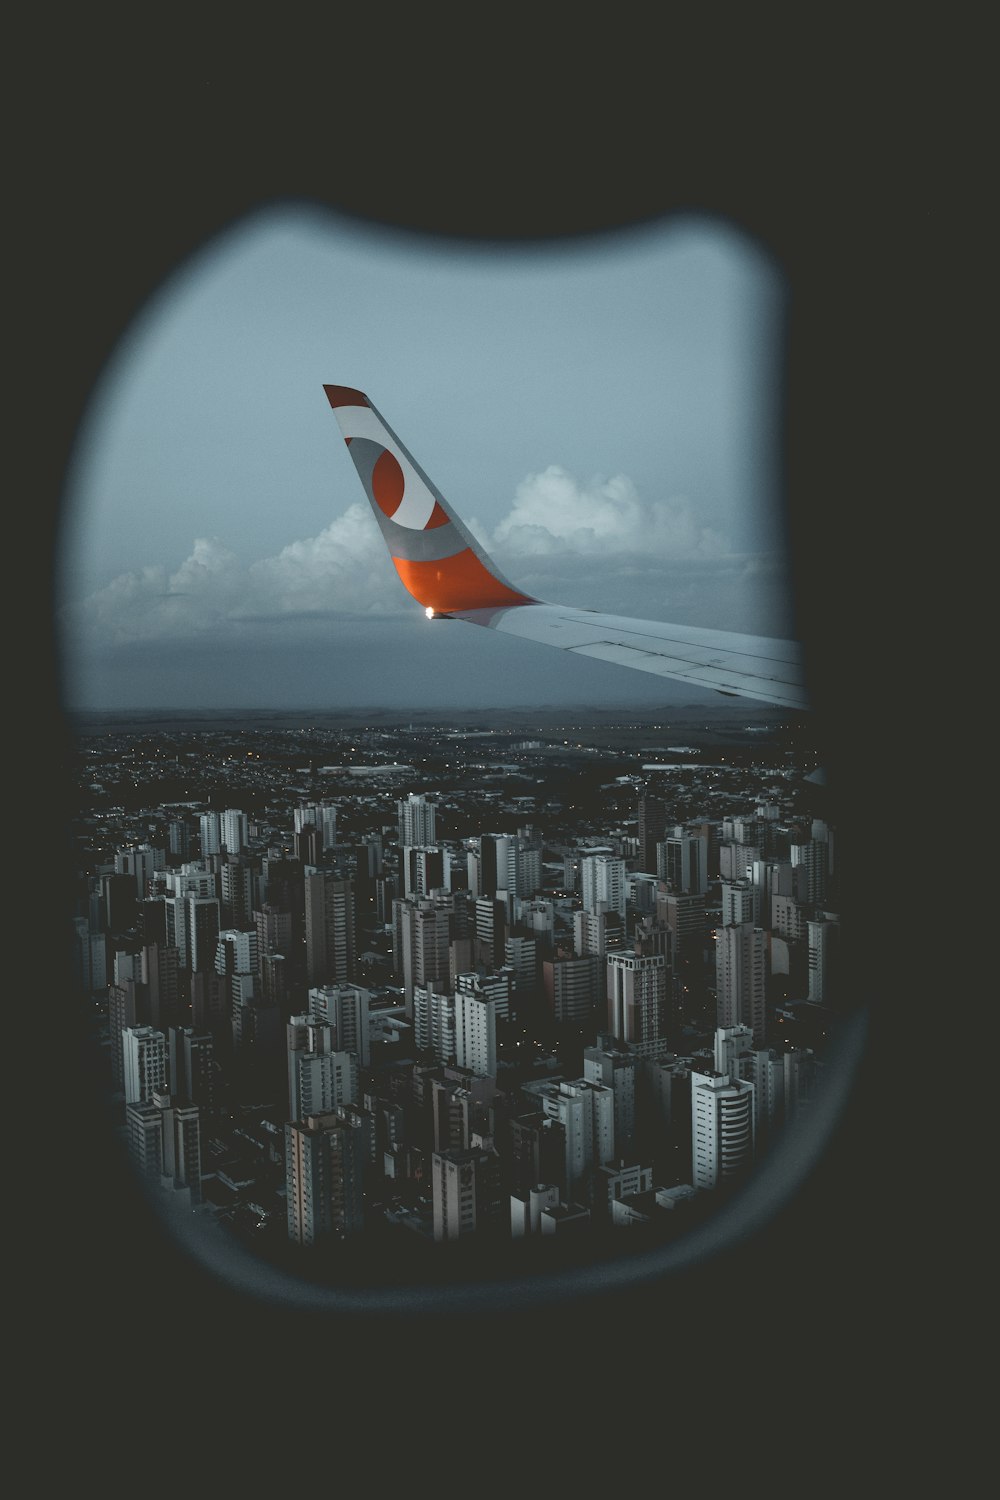 orangefarbenes und graues Flugzeug mit Flügeln, das tagsüber in der Luft fliegt